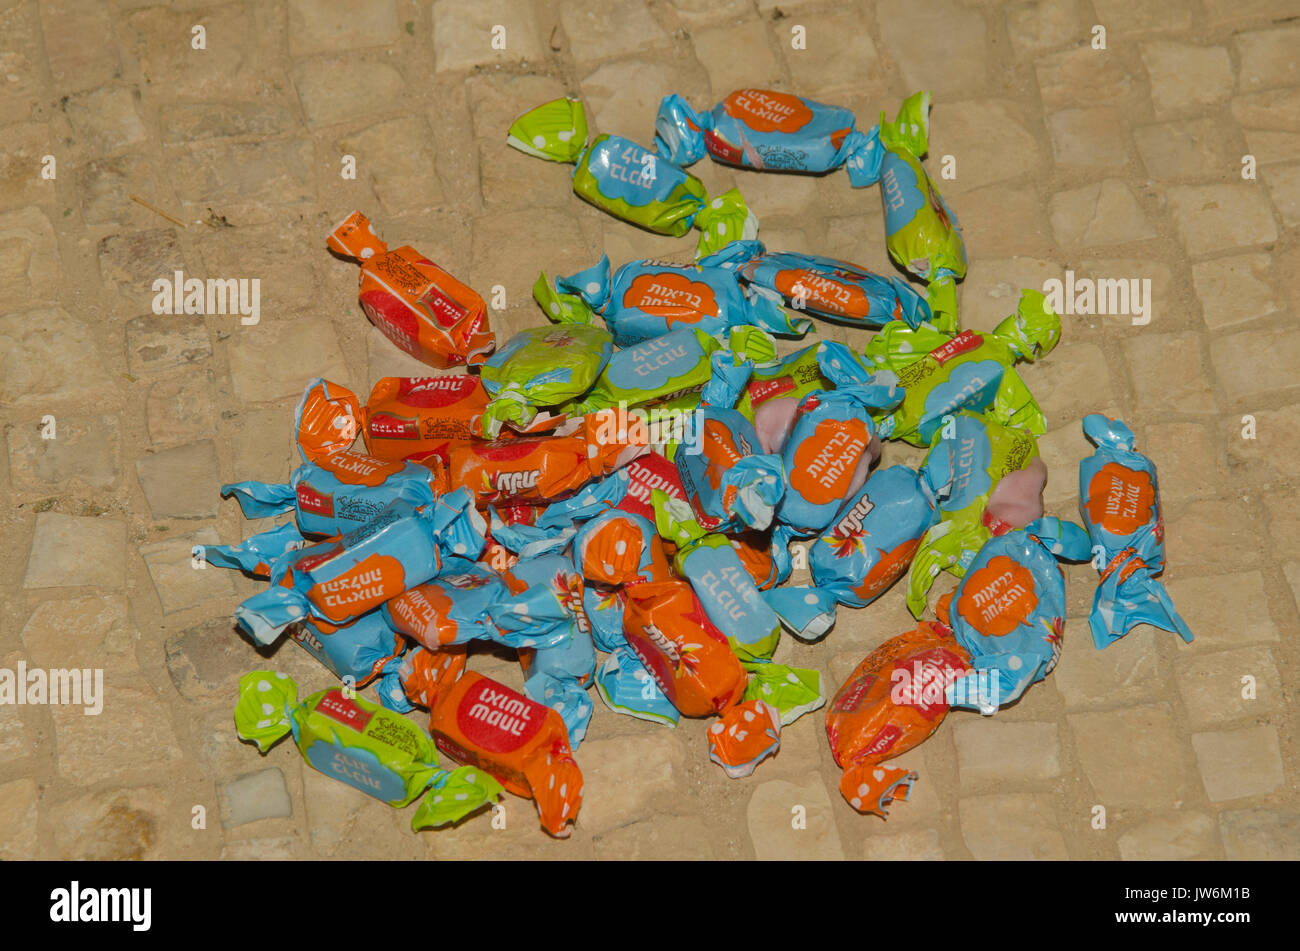 Süßigkeiten, die an der Bar Mitzvah Jungen für gutes Glück geworfen wurden, Stockfoto